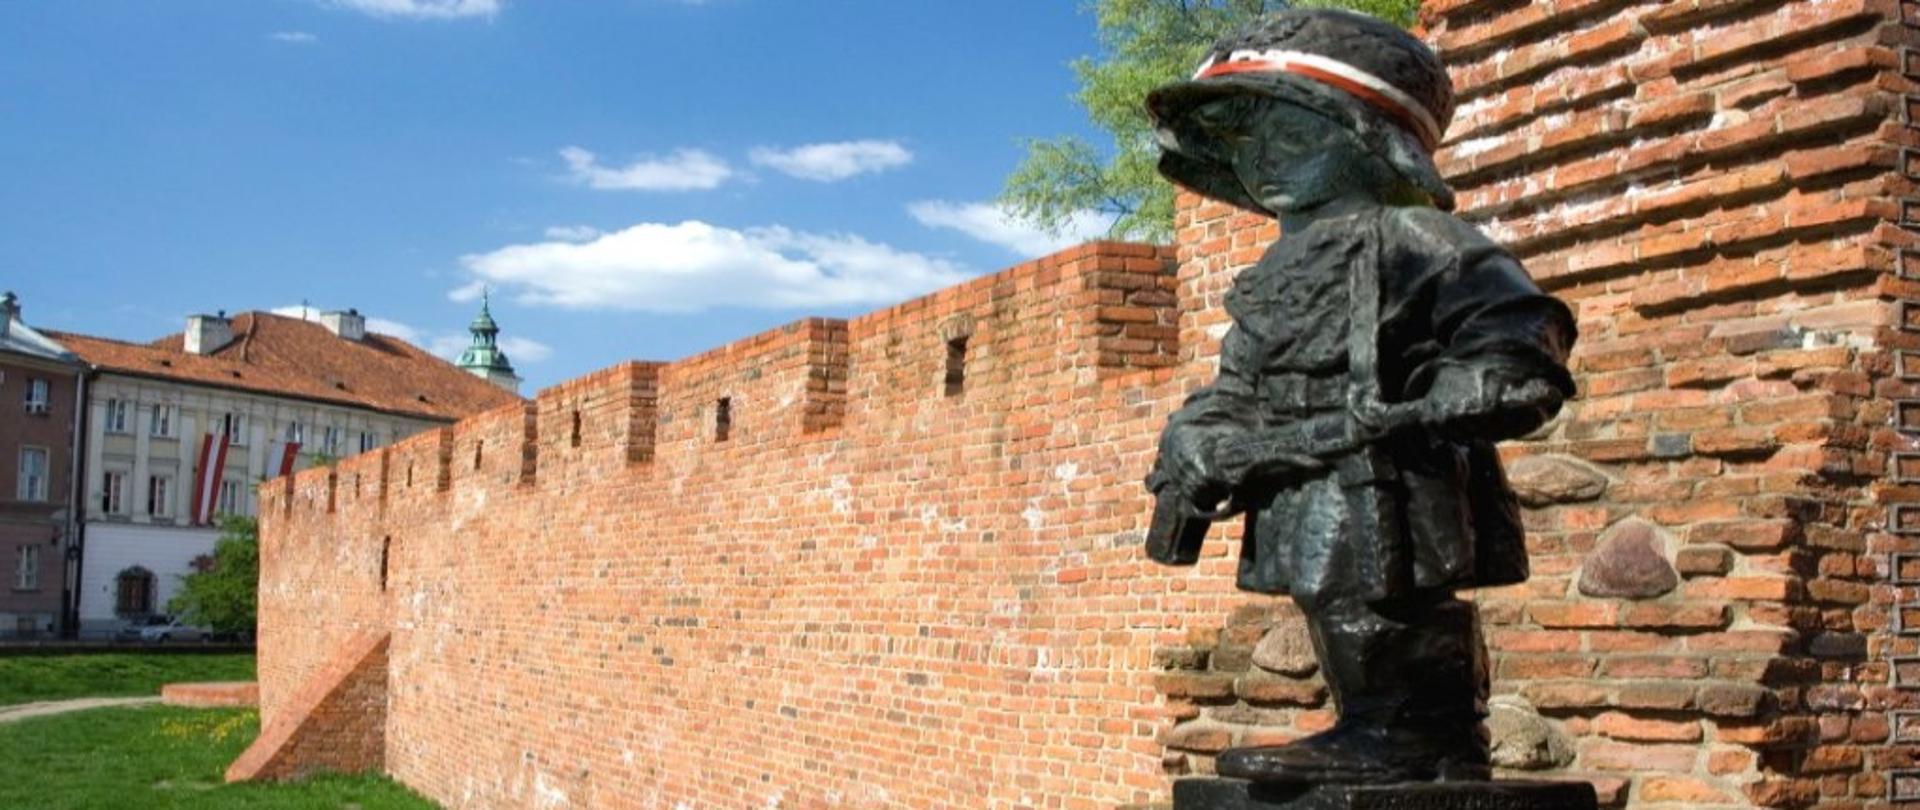 Rzeźba małego dziecka z karabinem w rękach i w hełmie, w tle stary mur obronny